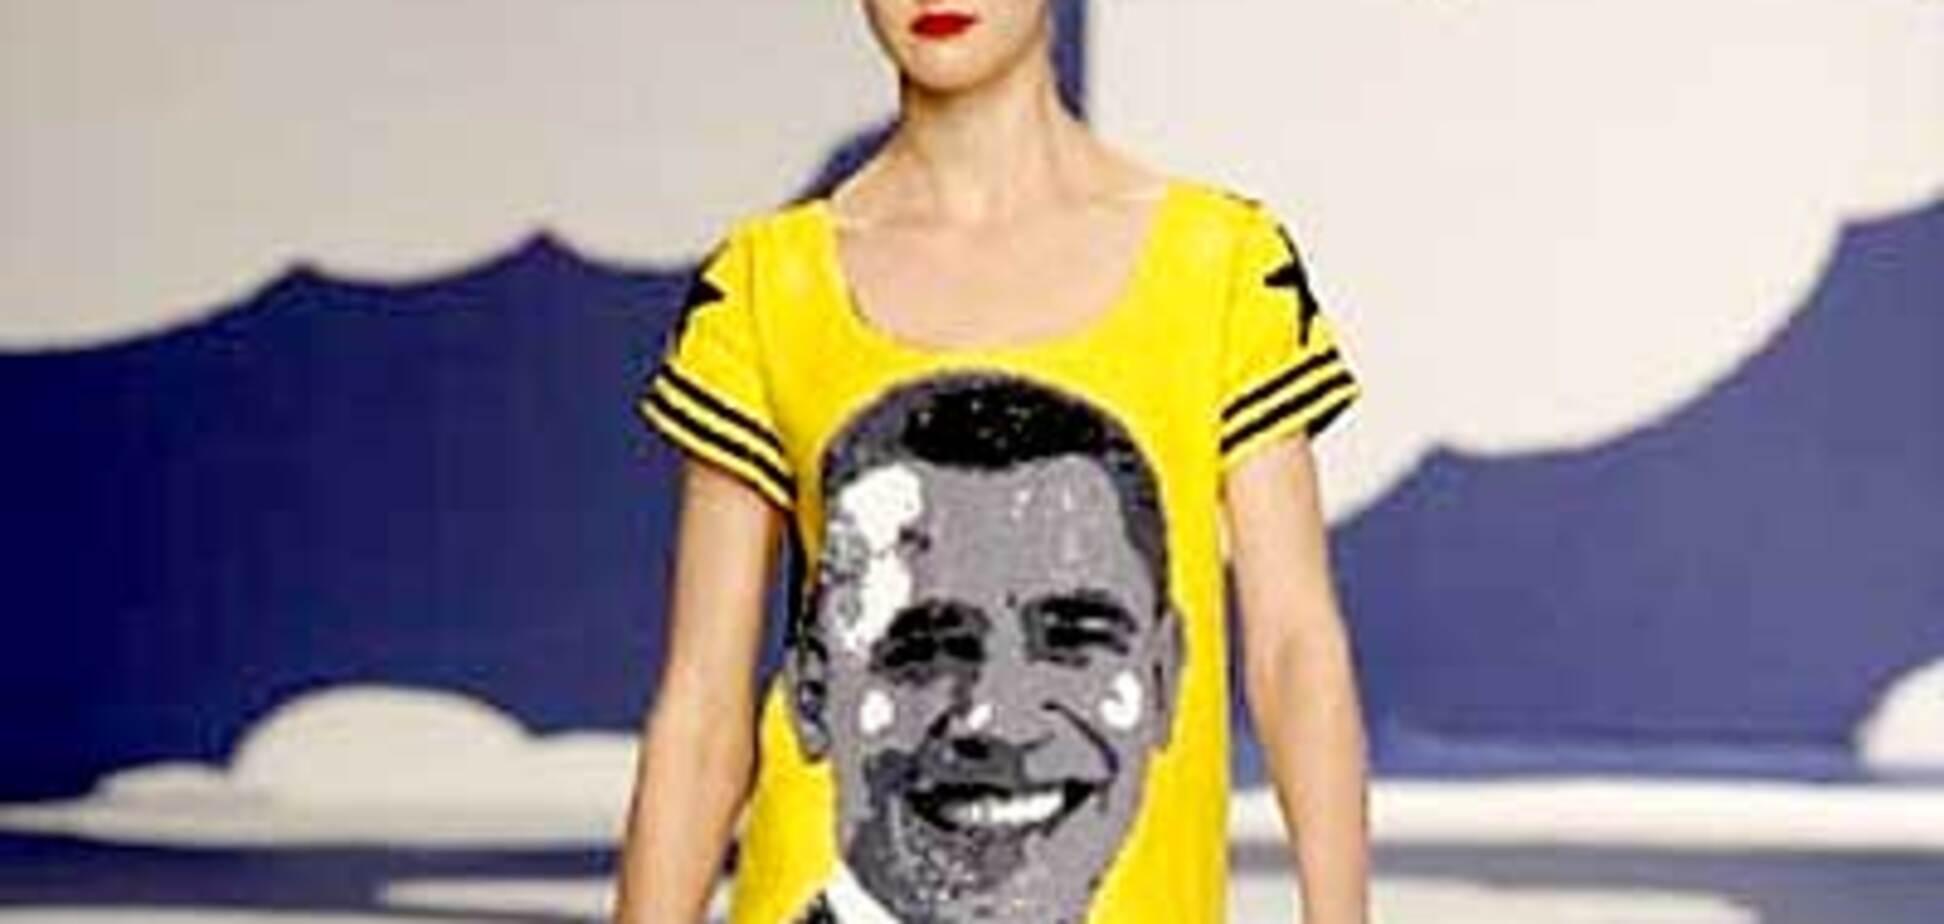 Сукня з Обамою - писк моди в Парижі